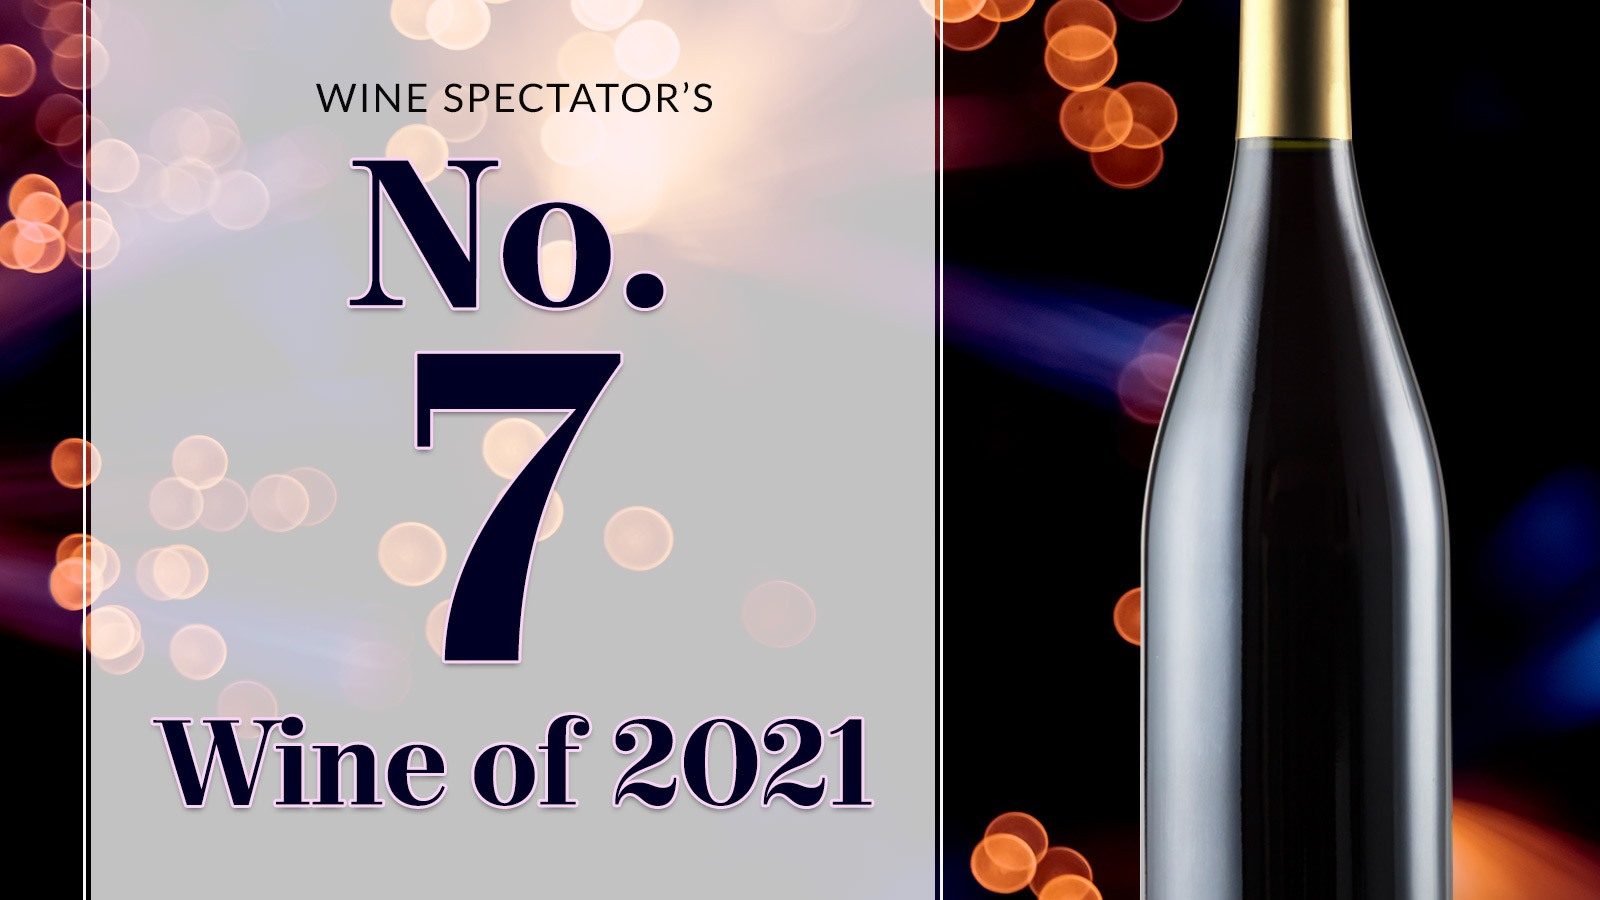 龙博菲2018年份被评为《葡萄酒观察家》百大榜单的第七名 - Léoville Poyferré